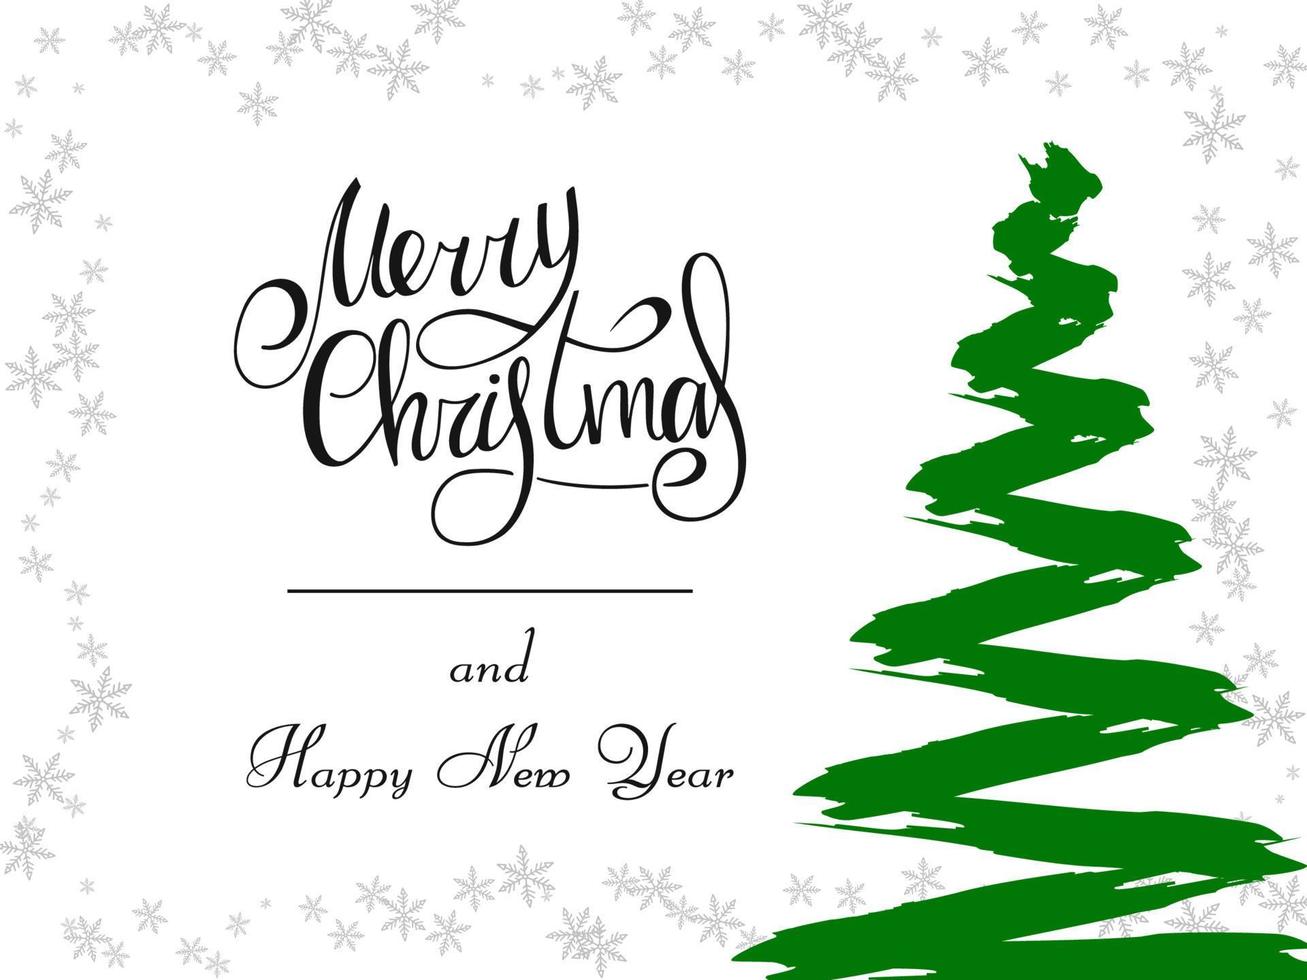 letras escritas a mano en negro sobre un fondo blanco. árbol de Navidad verde mágico hecho de pinceladas con copos de nieve grises. feliz navidad y próspero año nuevo 2022. vector